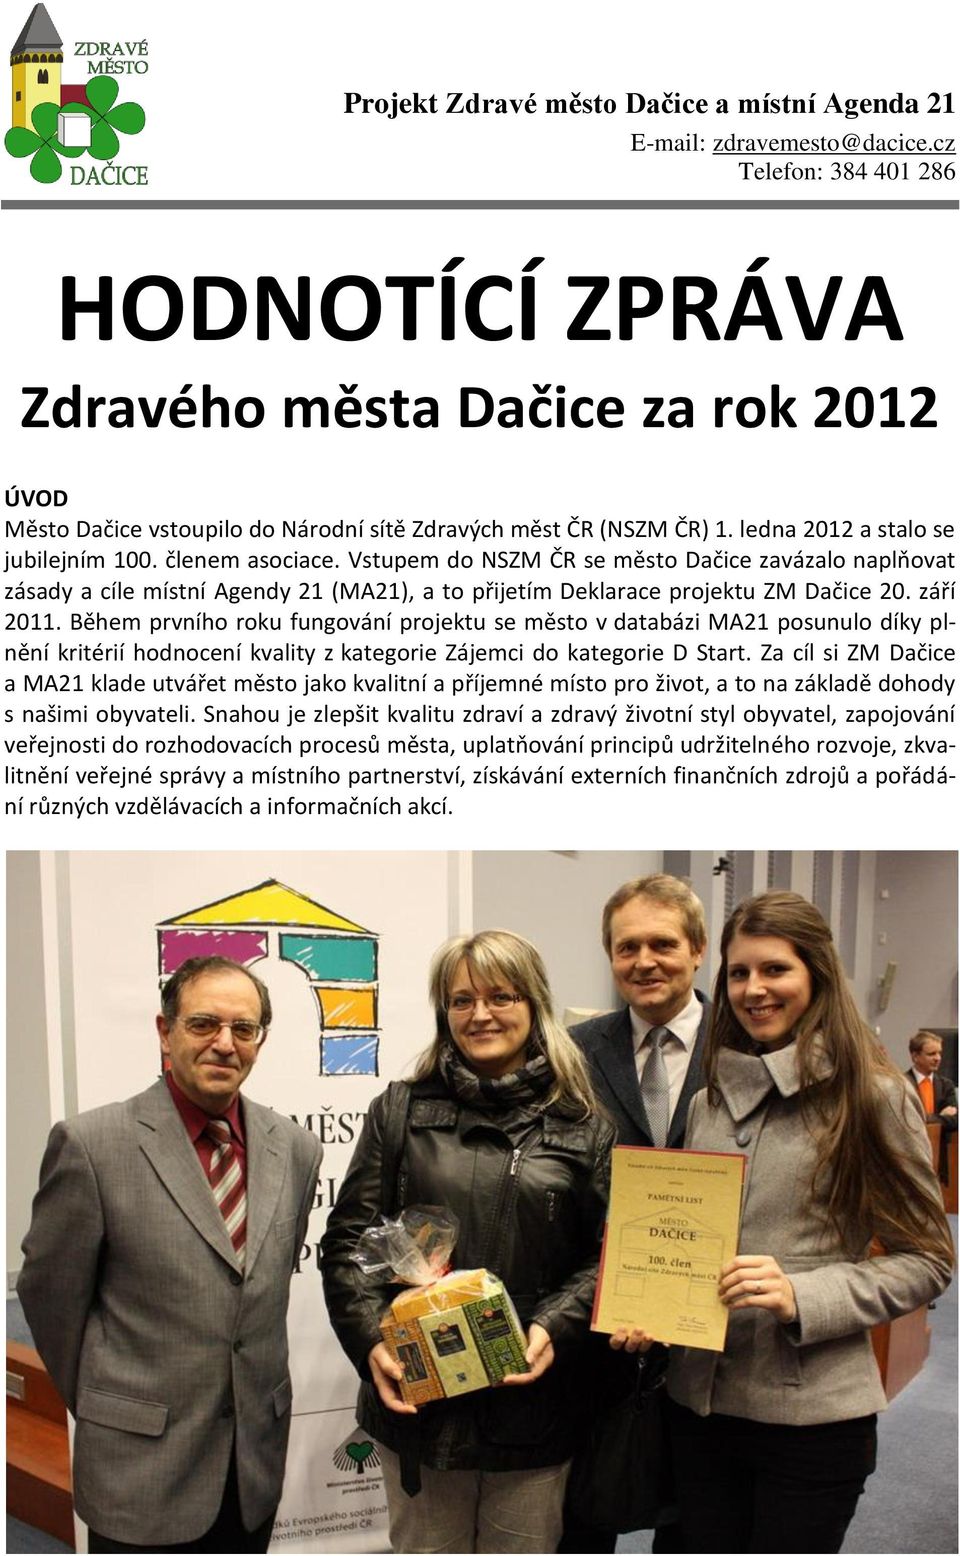 členem asociace. Vstupem do NSZM ČR se město Dačice zavázalo naplňovat zásady a cíle místní Agendy 21 (MA21), a to přijetím Deklarace projektu ZM Dačice 20. září 2011.